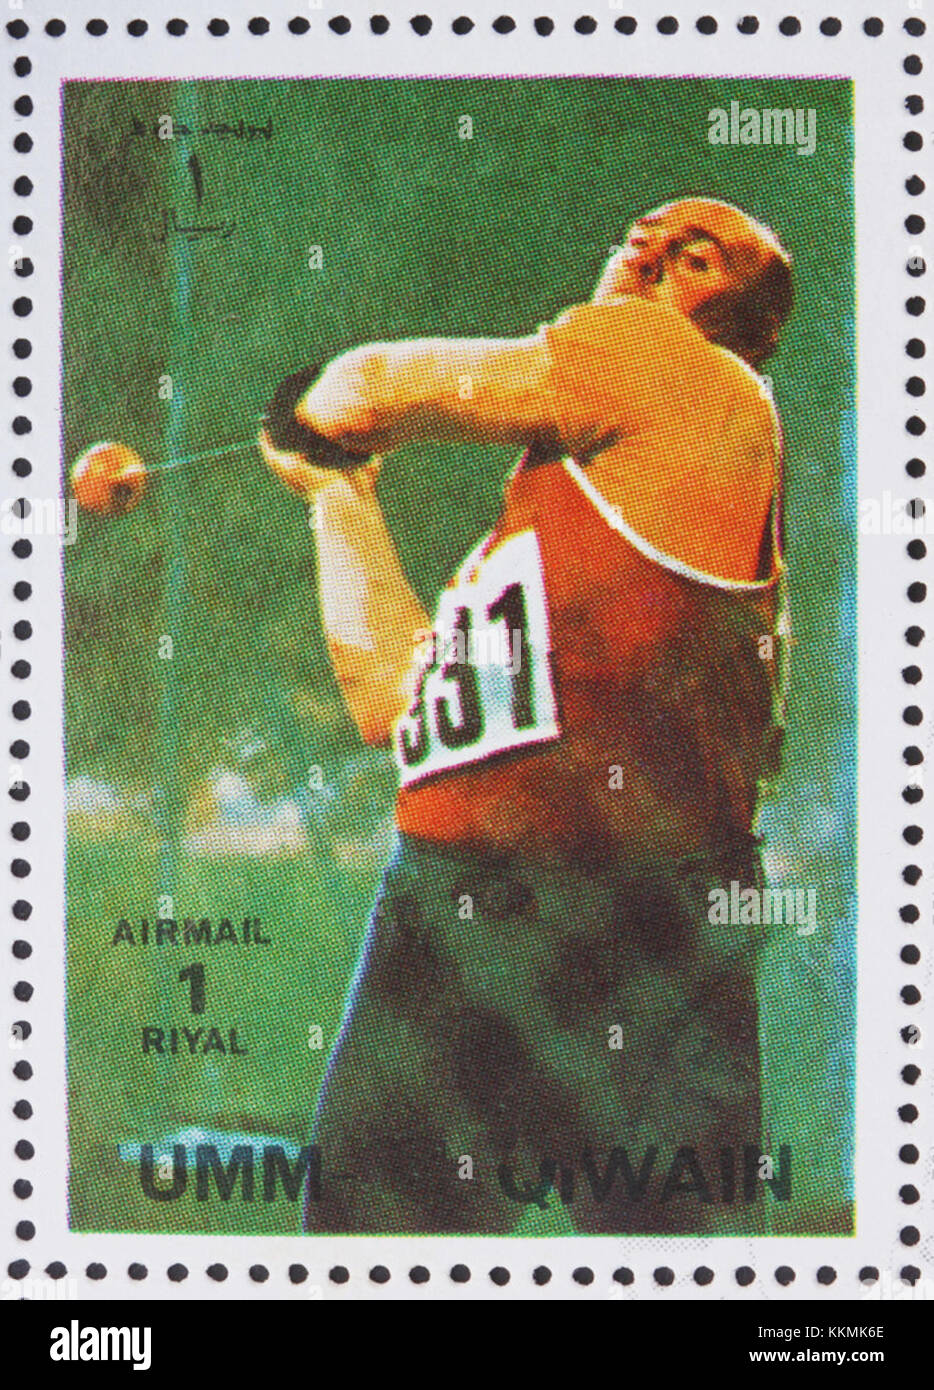 UMM AL-QUWAIN - ALREDEDOR de 1972: Un sello impreso en el Umm al-Quwain muestra lanzamiento de martillo, Atletismo, Juegos Olímpicos de Verano, Munich 1972, cerca de 1972 1972 sello de Umm al-Quwain Anatoliy Bondarchuk Foto de stock